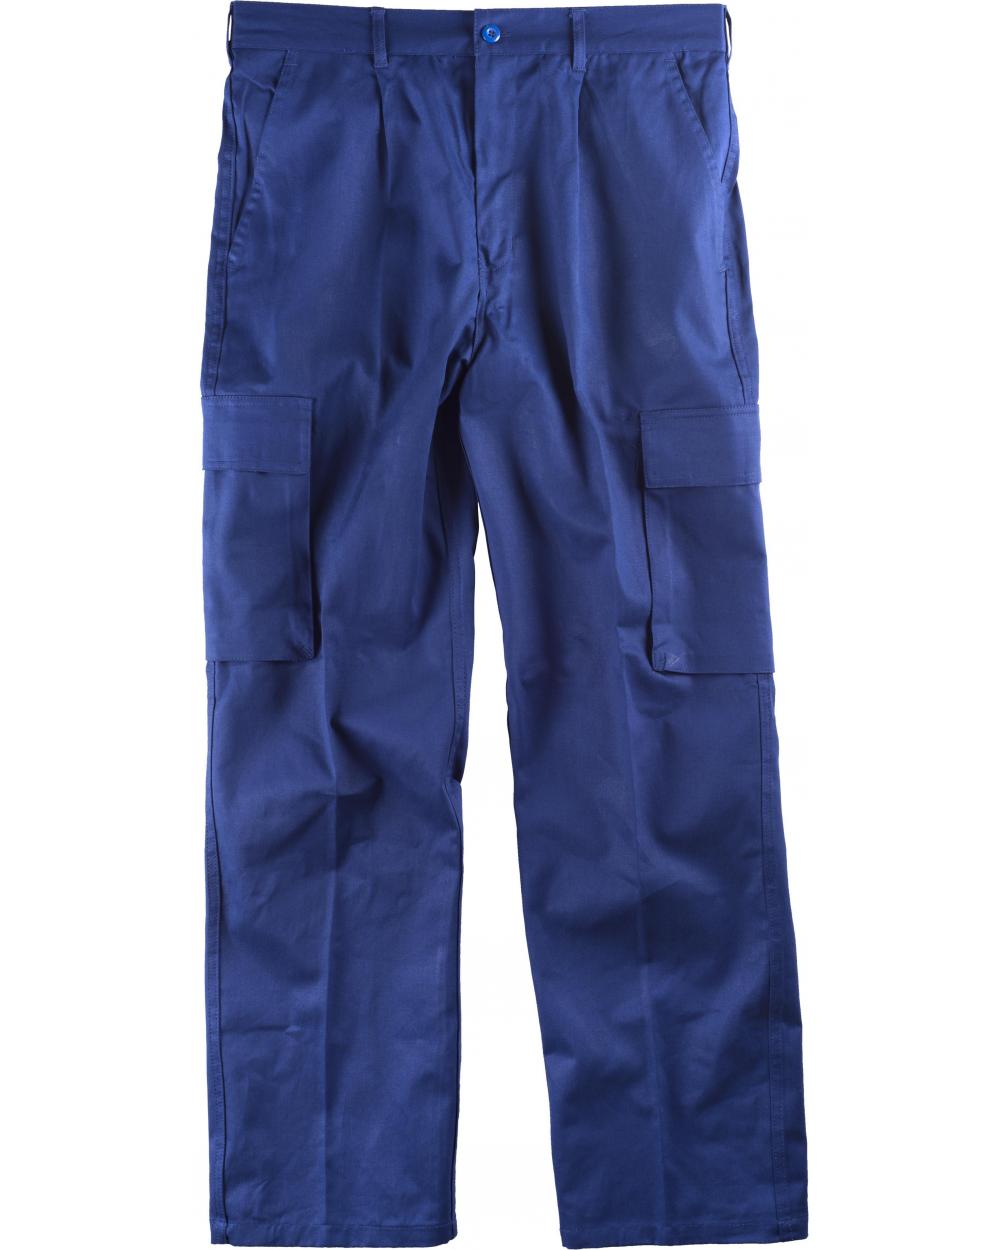 Comprar Pantalon de trabajo de algodon B1456 Azulina workteam delante